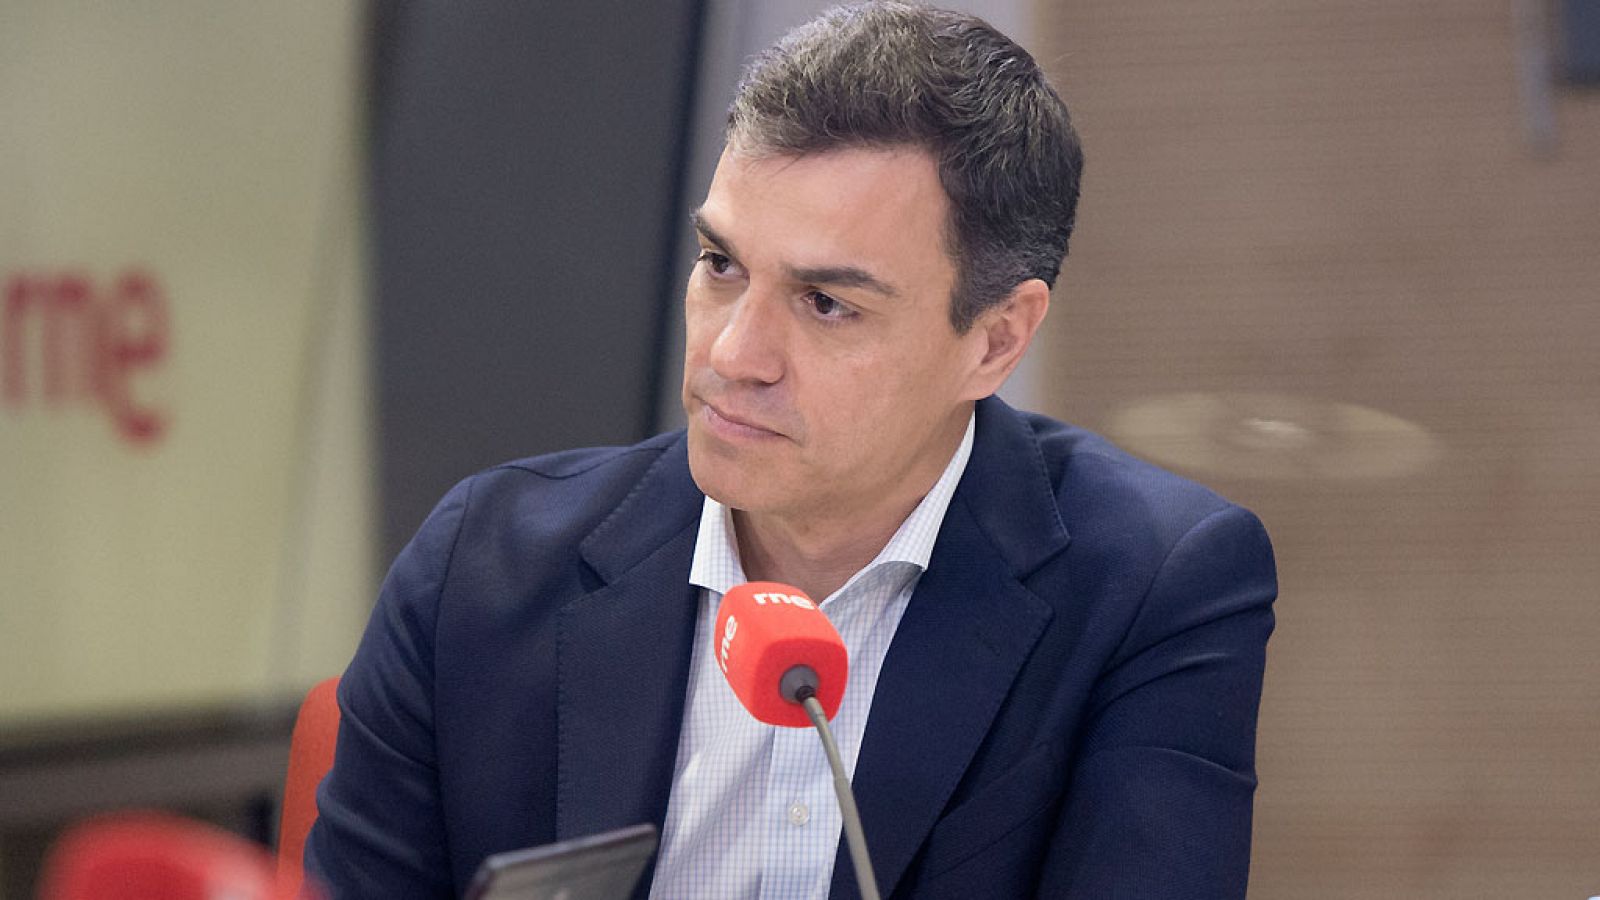 Cifuentes renuncia al máster: Pedro Sánchez insiste en que Cifuentes "ha mentido" y debe dimitir